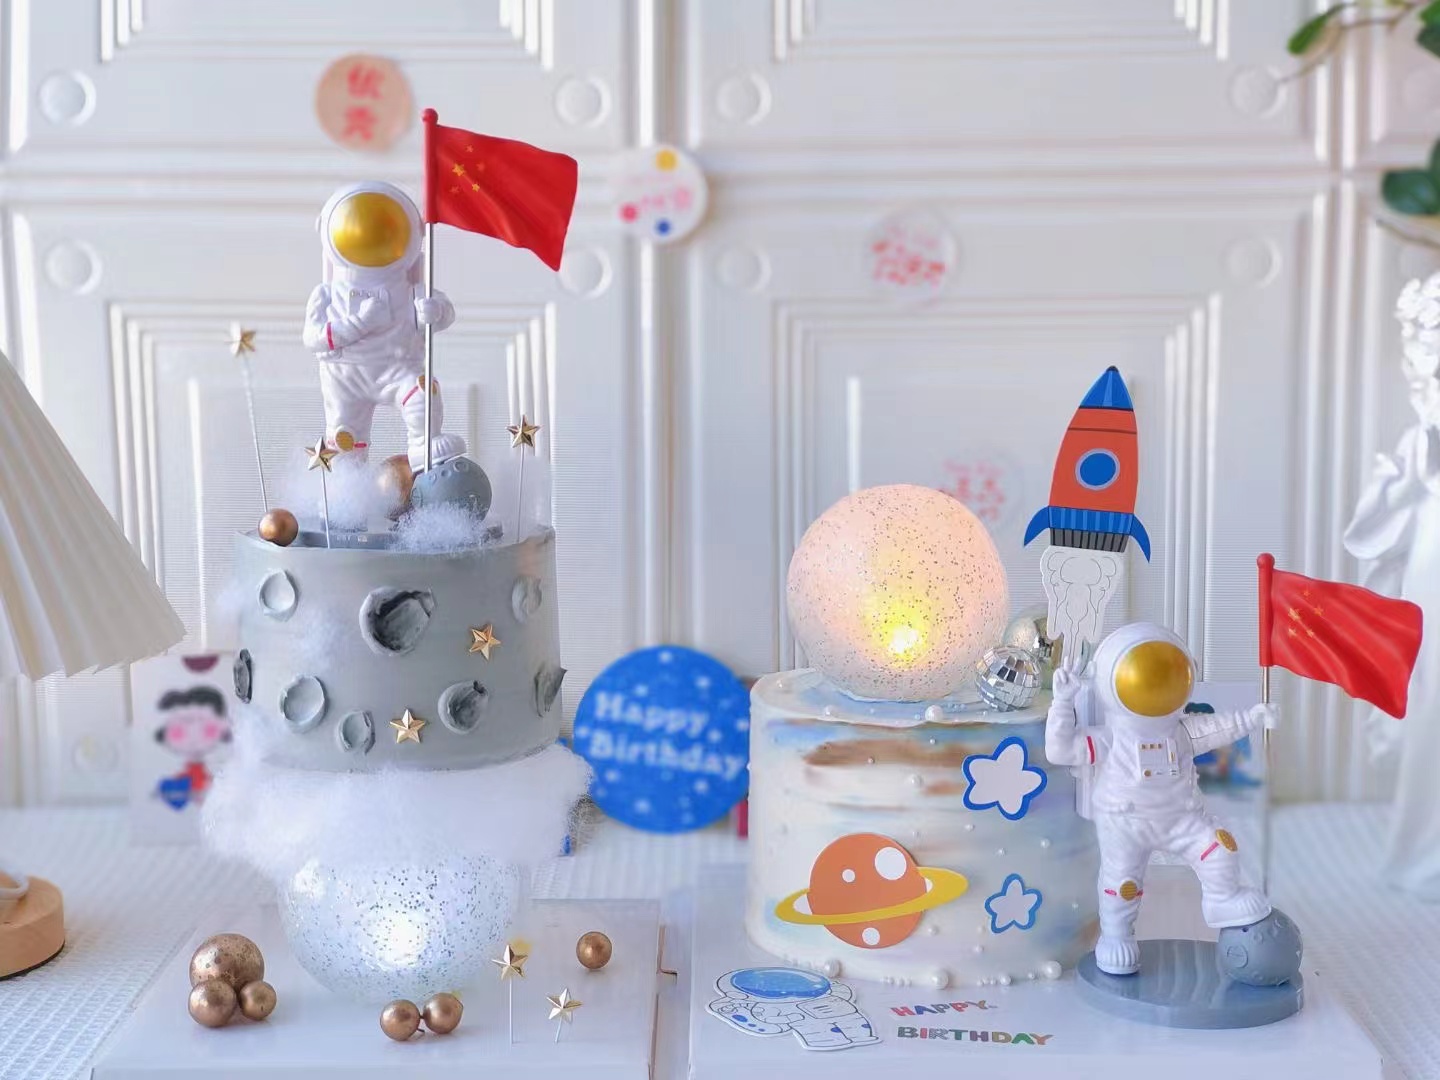 生日蛋糕装饰摆件红旗宇航员航天太空人胜利心愿男宝宝男学生烘焙